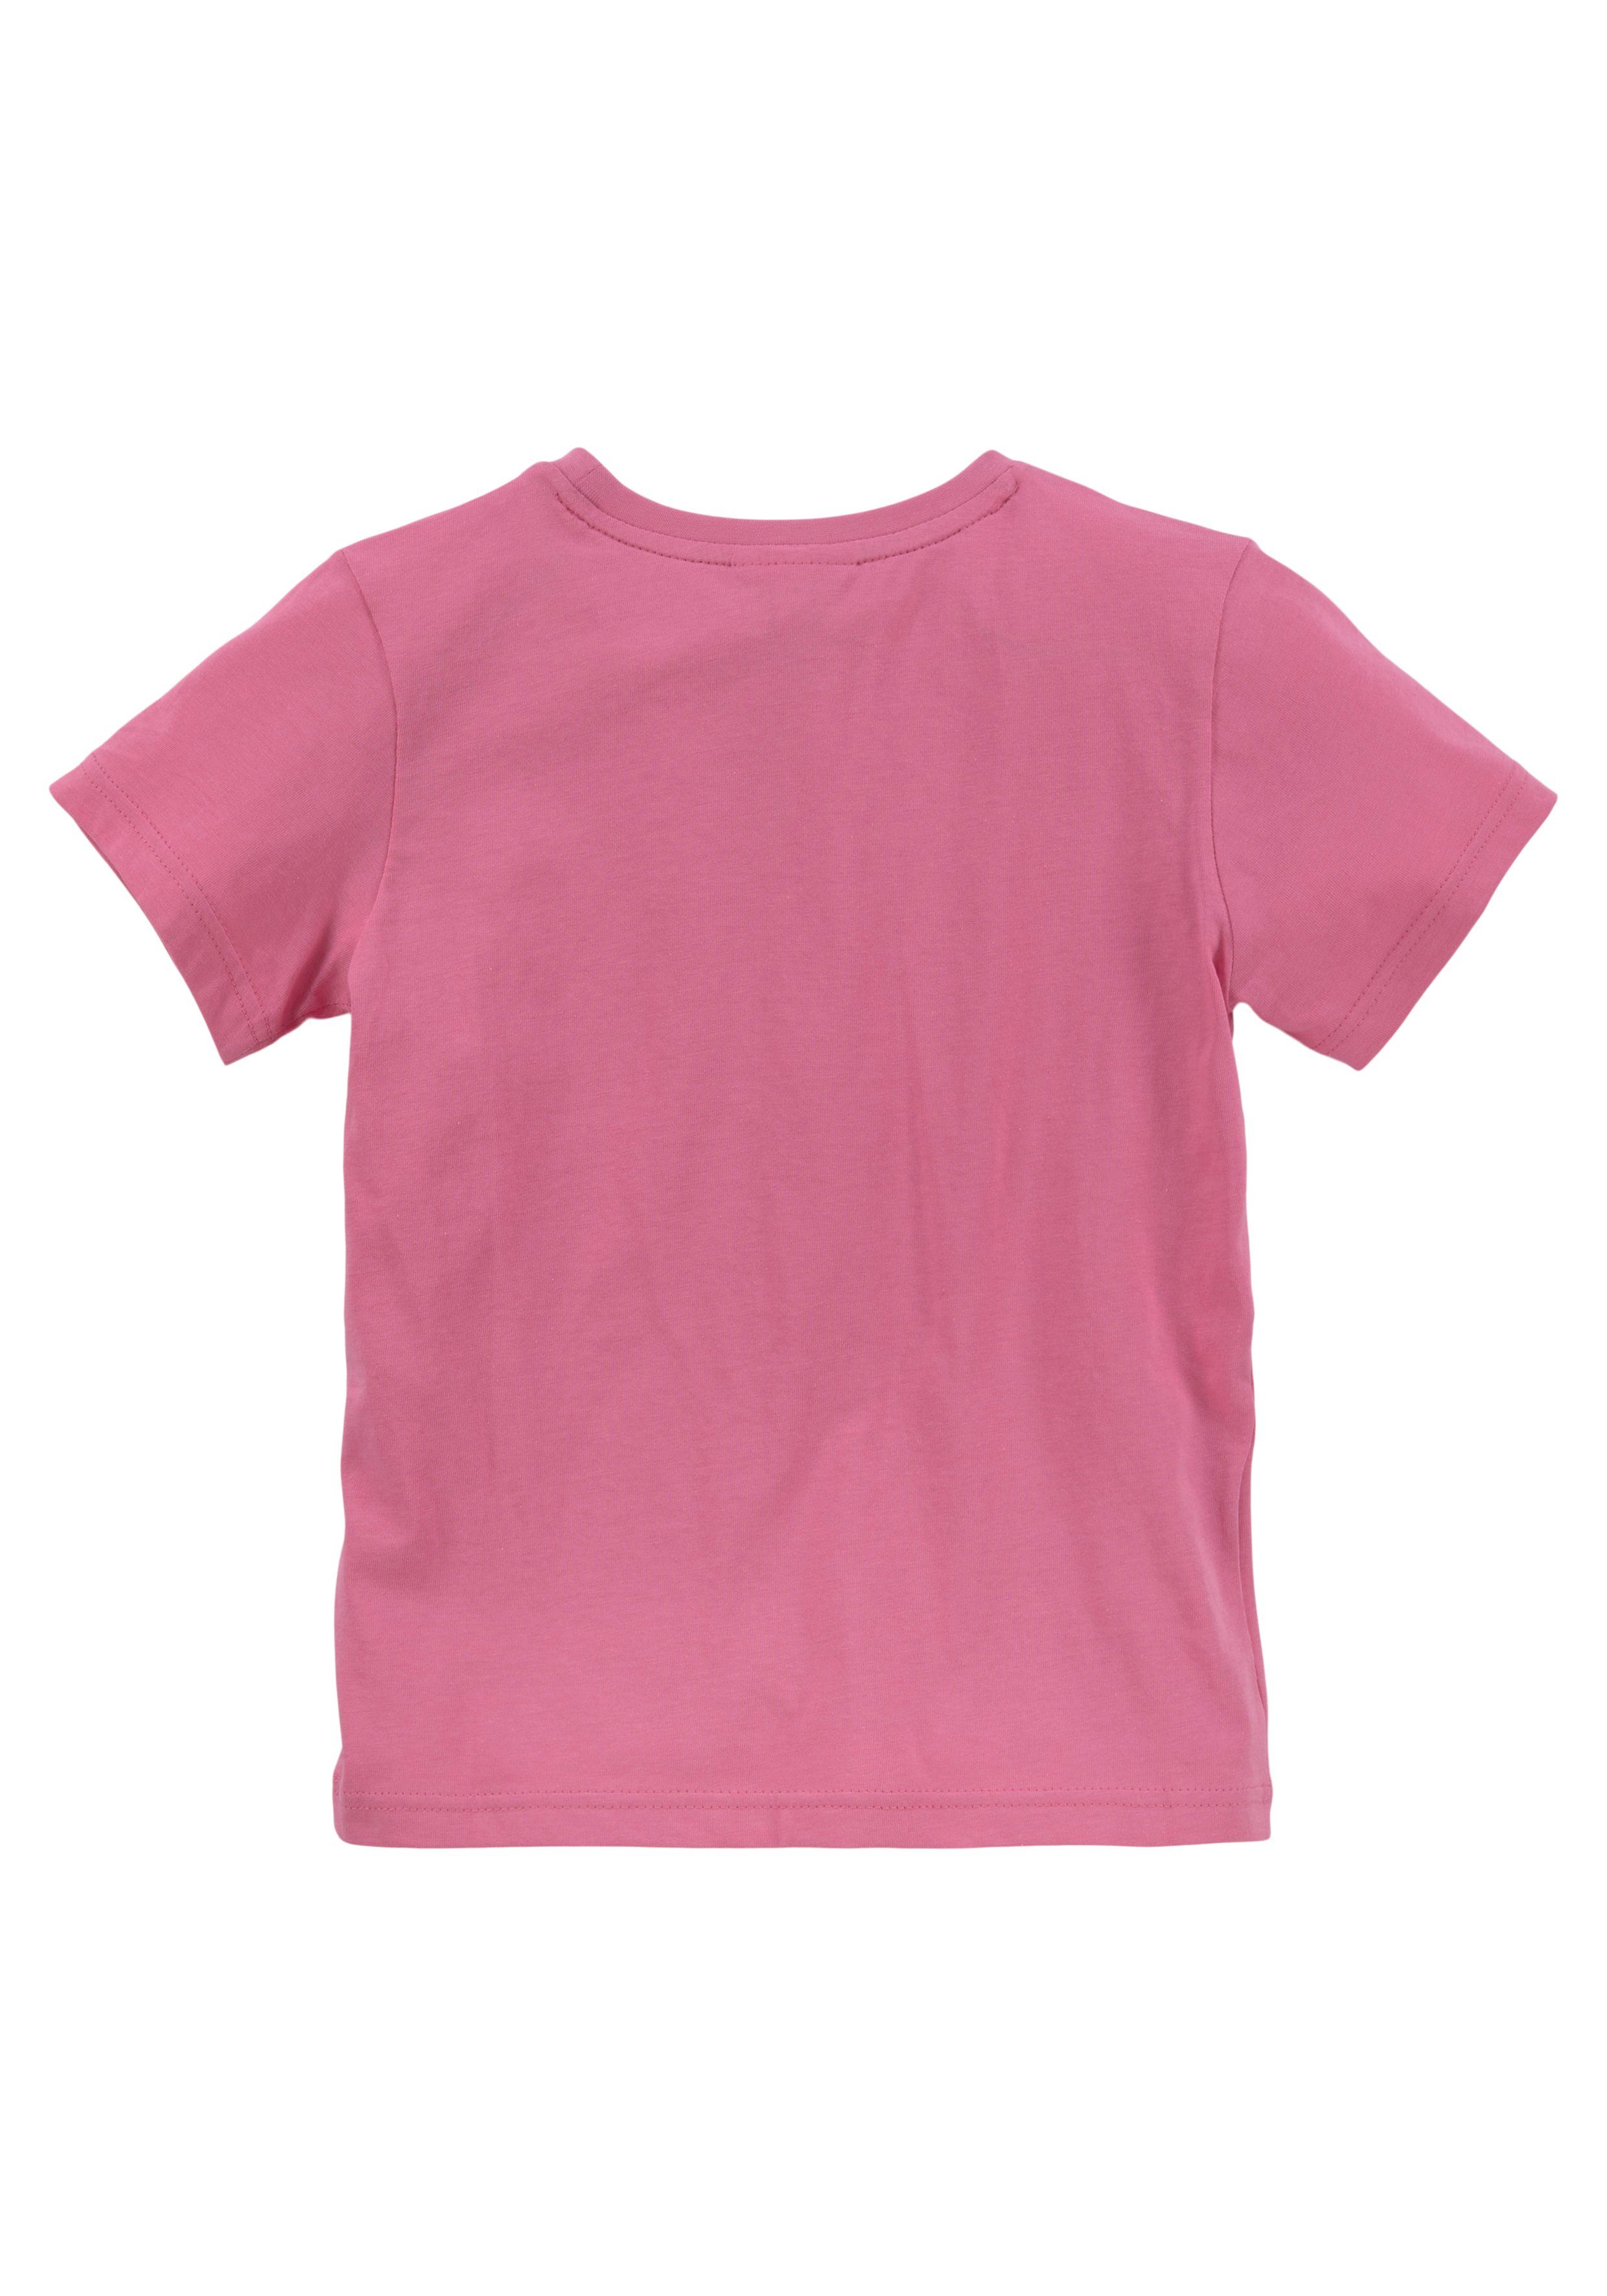 Lacoste reseda Rundhalsausschnitt T-Shirt pink mit